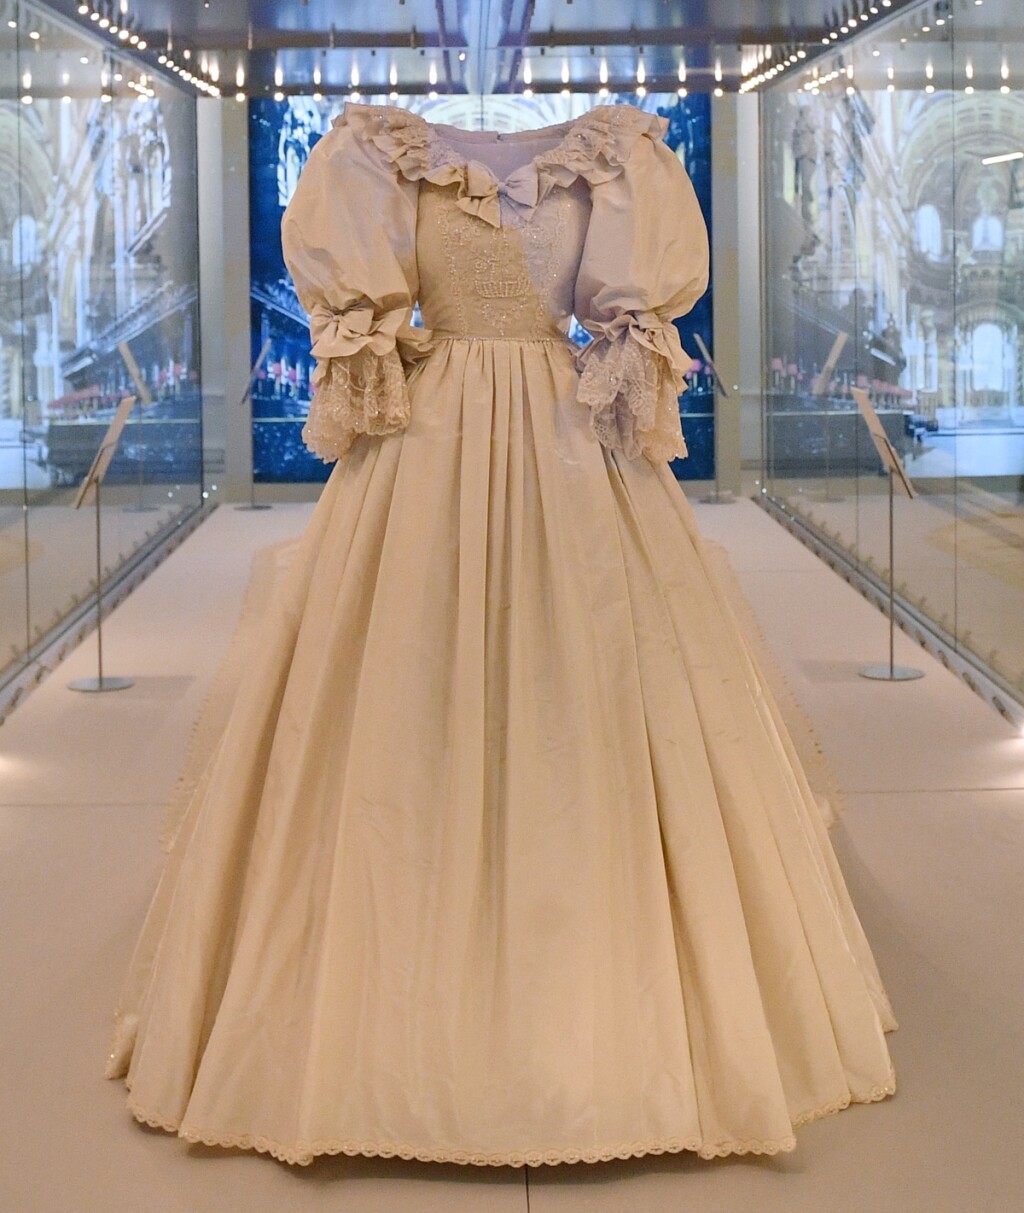 Originalna vjenčanica čuva se u Kensingtonskoj palači